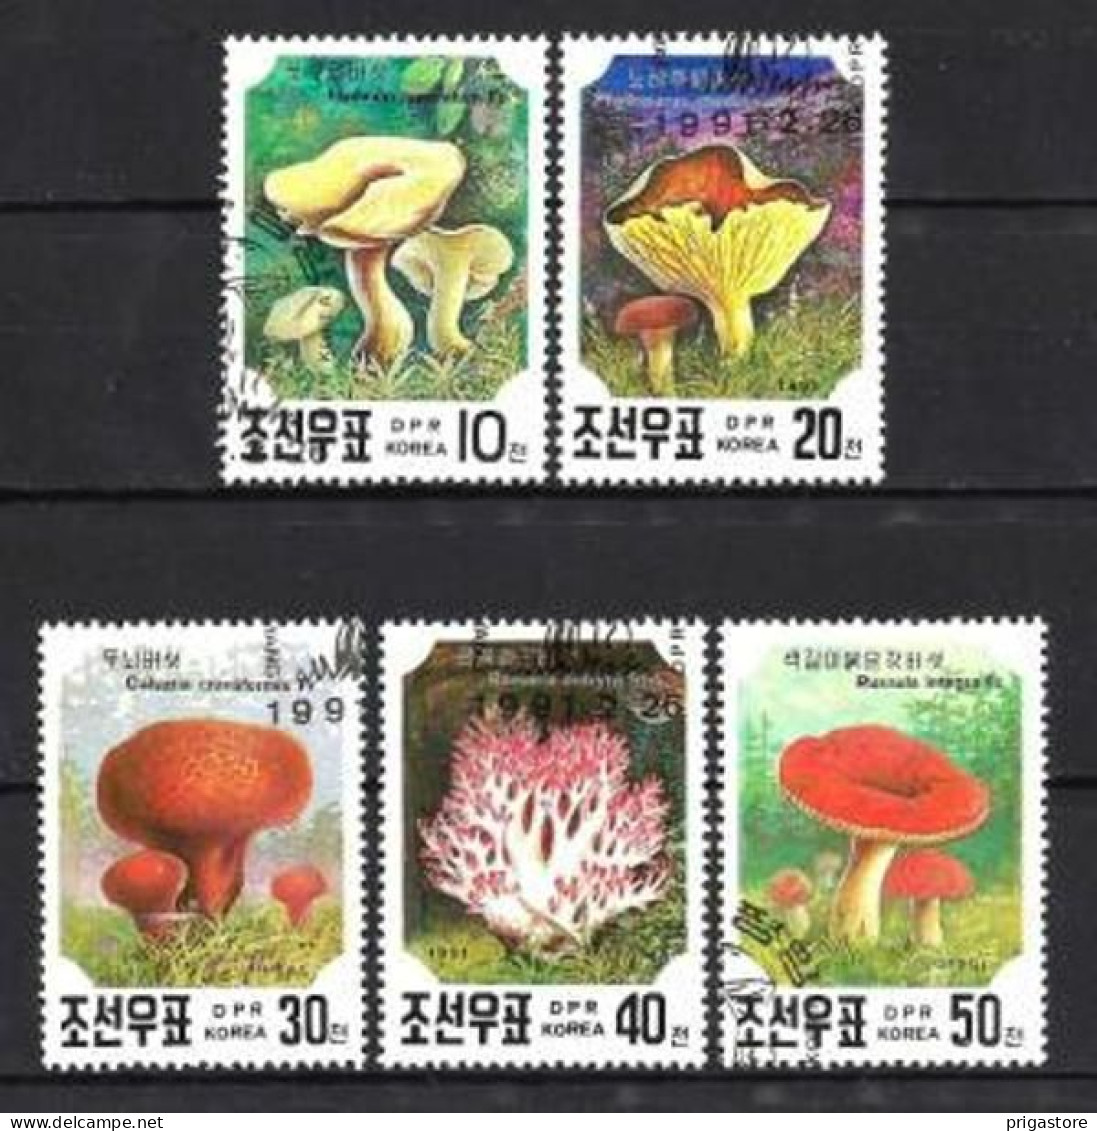 Corée Du Nord 1991 Champignons (33) Yvert N° 2217 à 2221 Oblitérés Used - Corée Du Nord